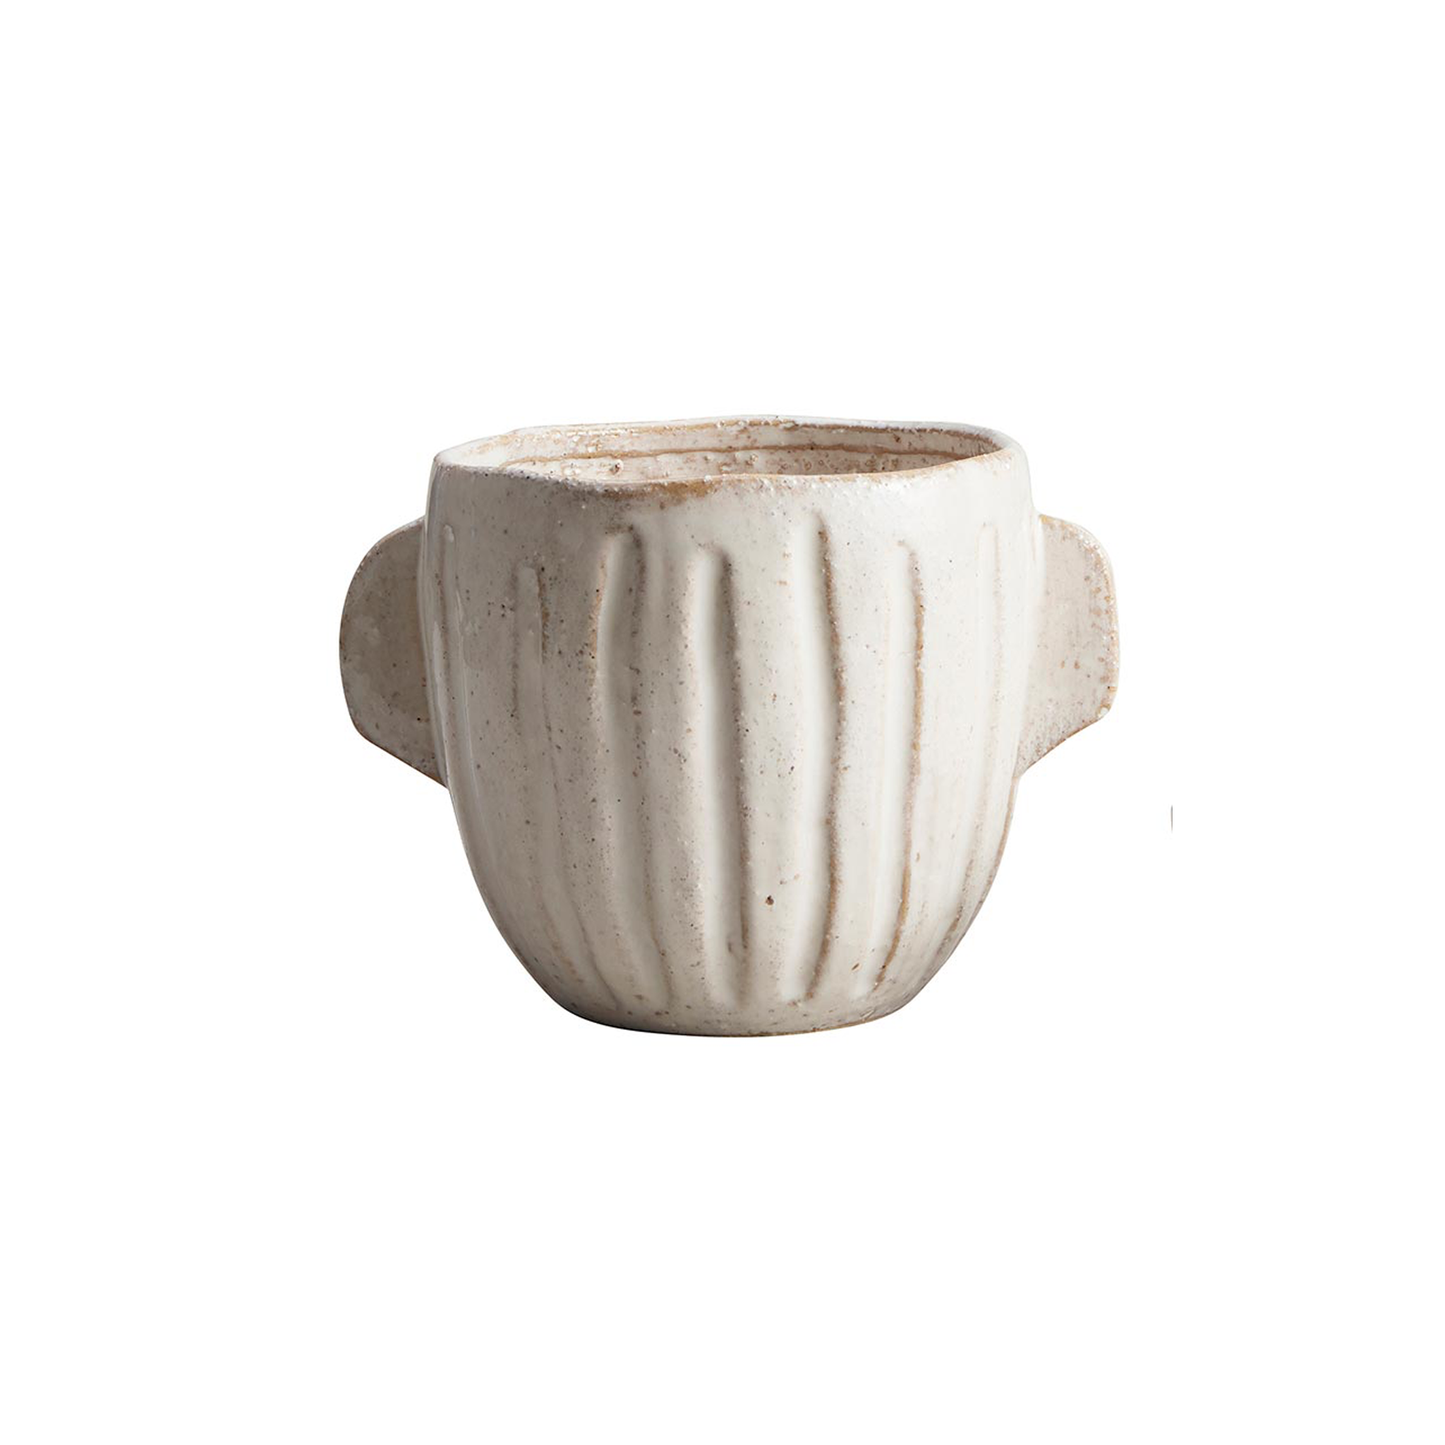 Handled Stoneware Pot - Large